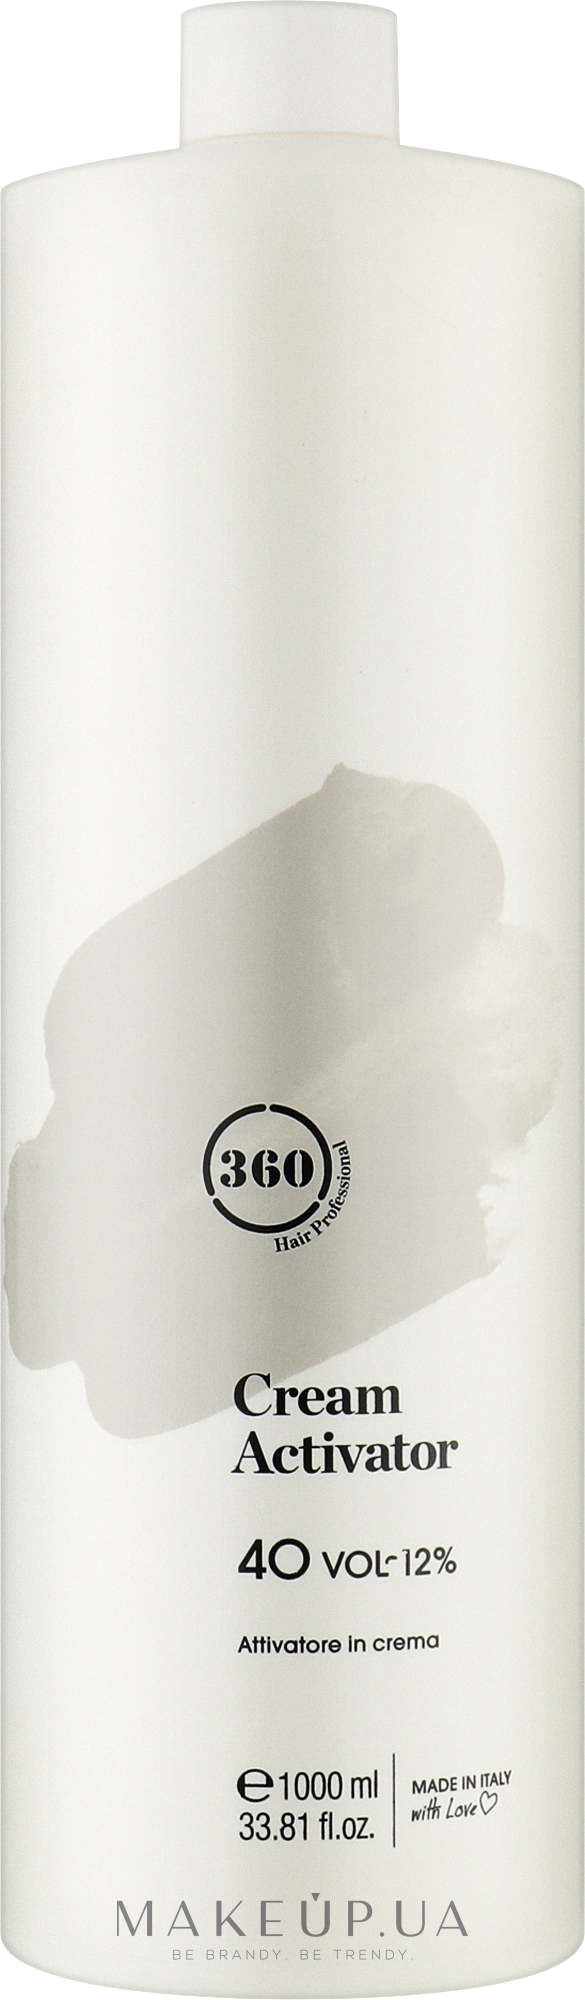 Крем-активатор 40 - 360 Cream Activator 40 Vol 12% — фото 1000ml